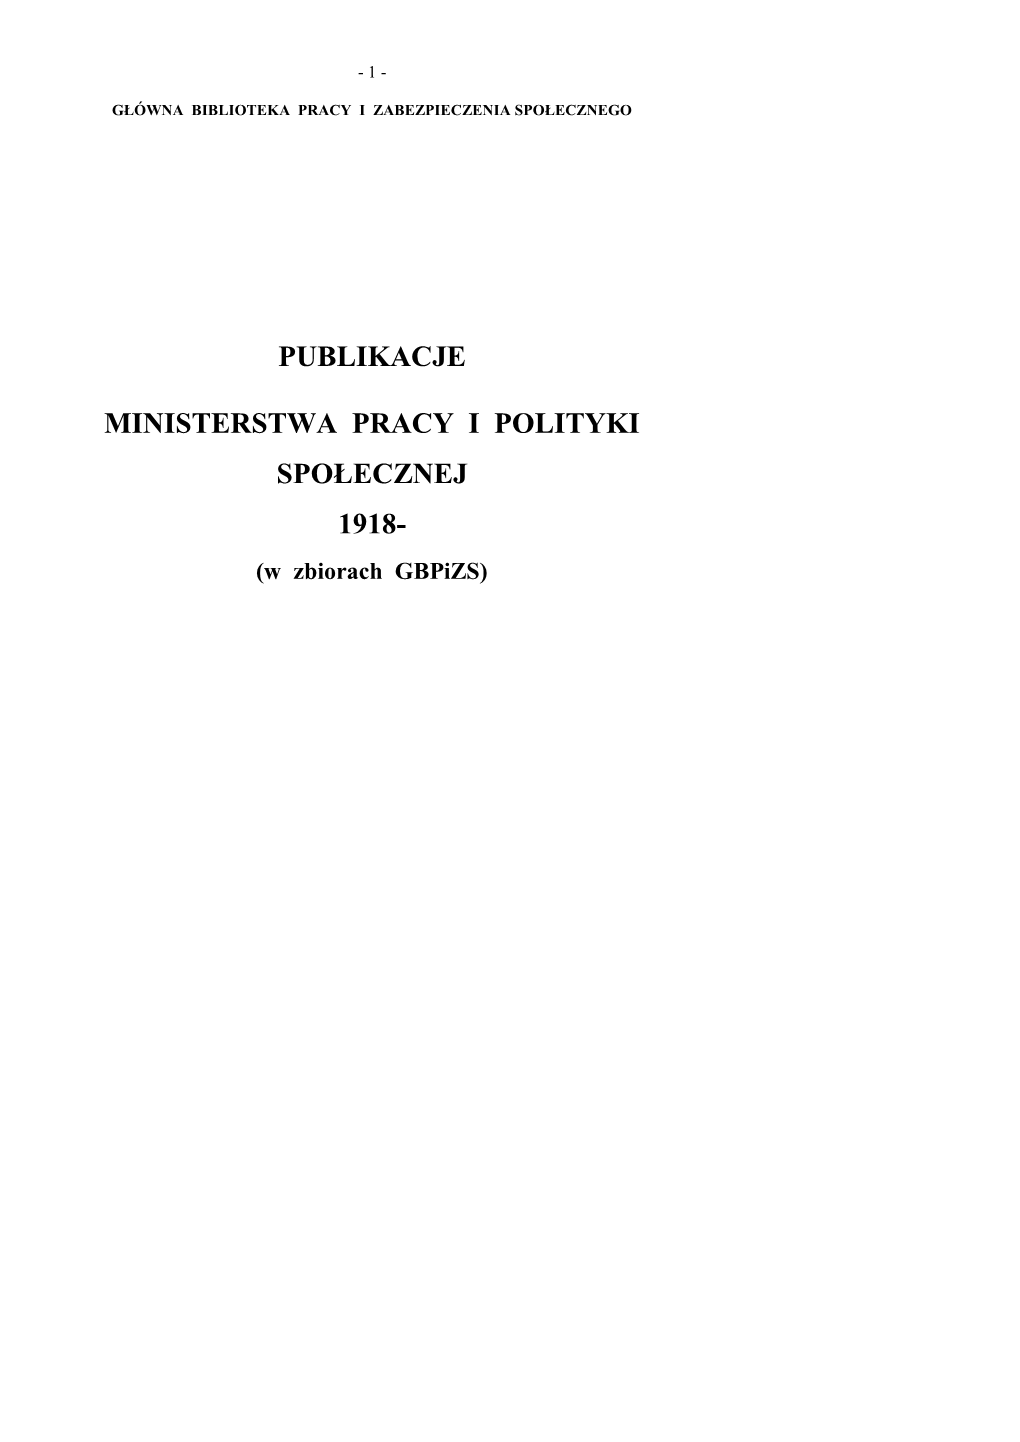 Publikacje Ministerstwa Pracy I Polityki Społecznej 1918